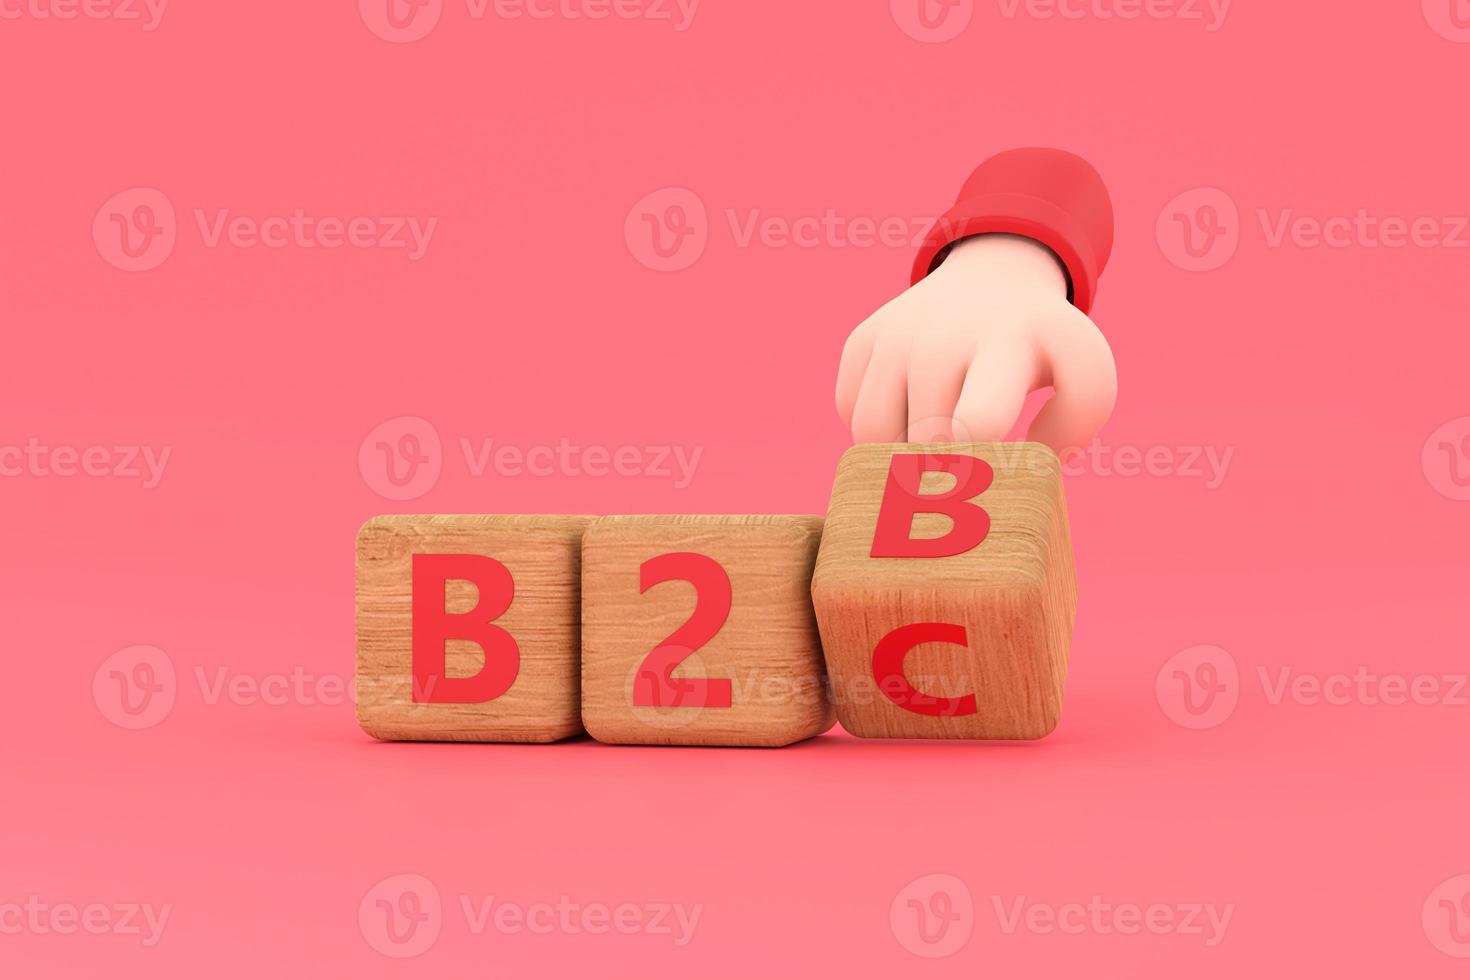 la main tourne un dé et change l'expression b2b en b2c photo